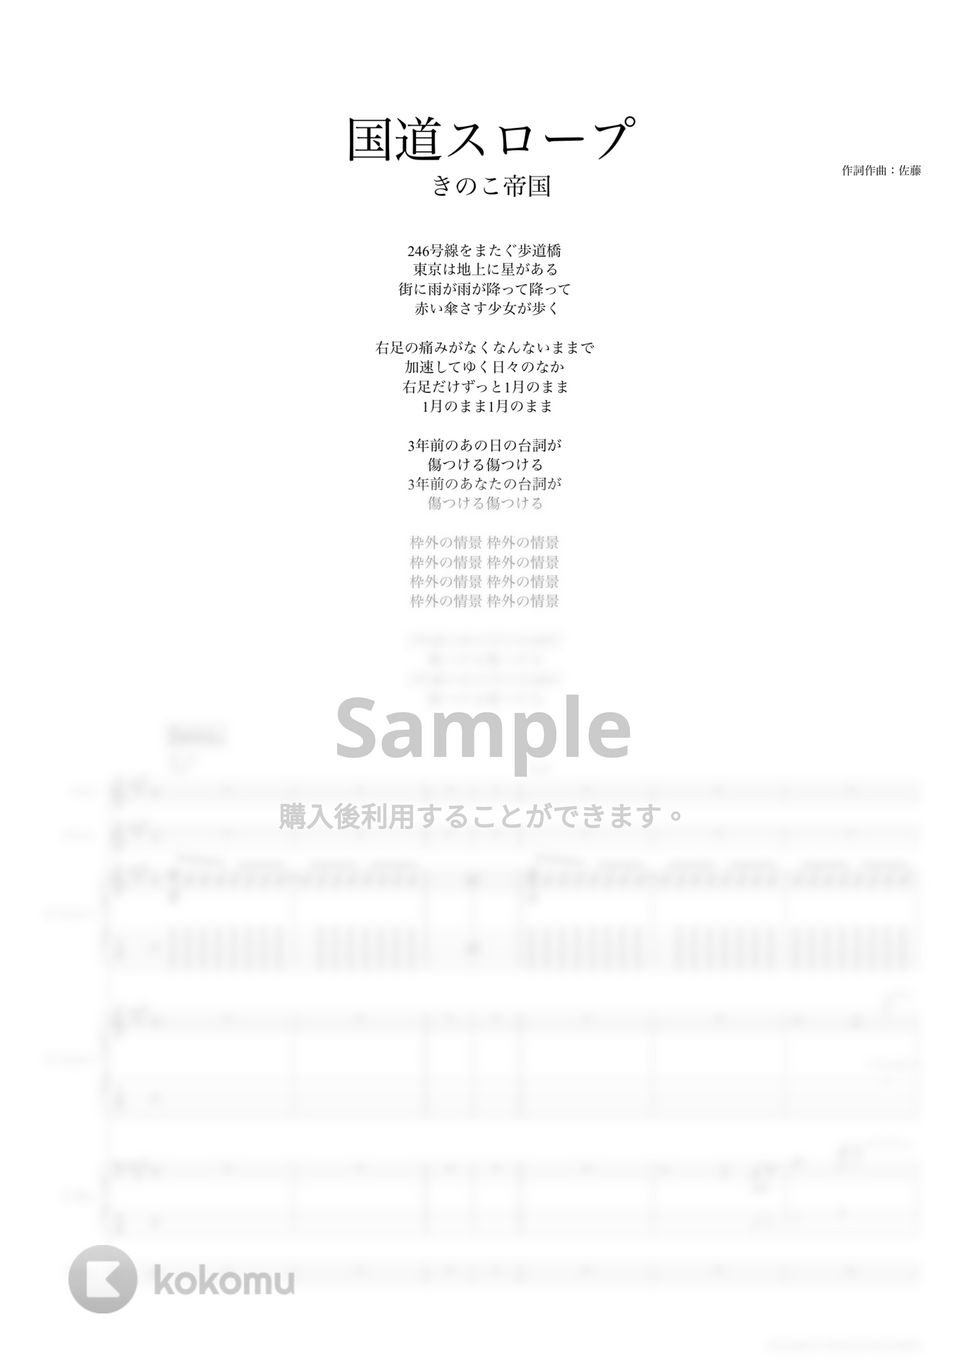 きのこ帝国 - 国道スロープ (バンドスコア) タブ + 五線譜 by TRIAD